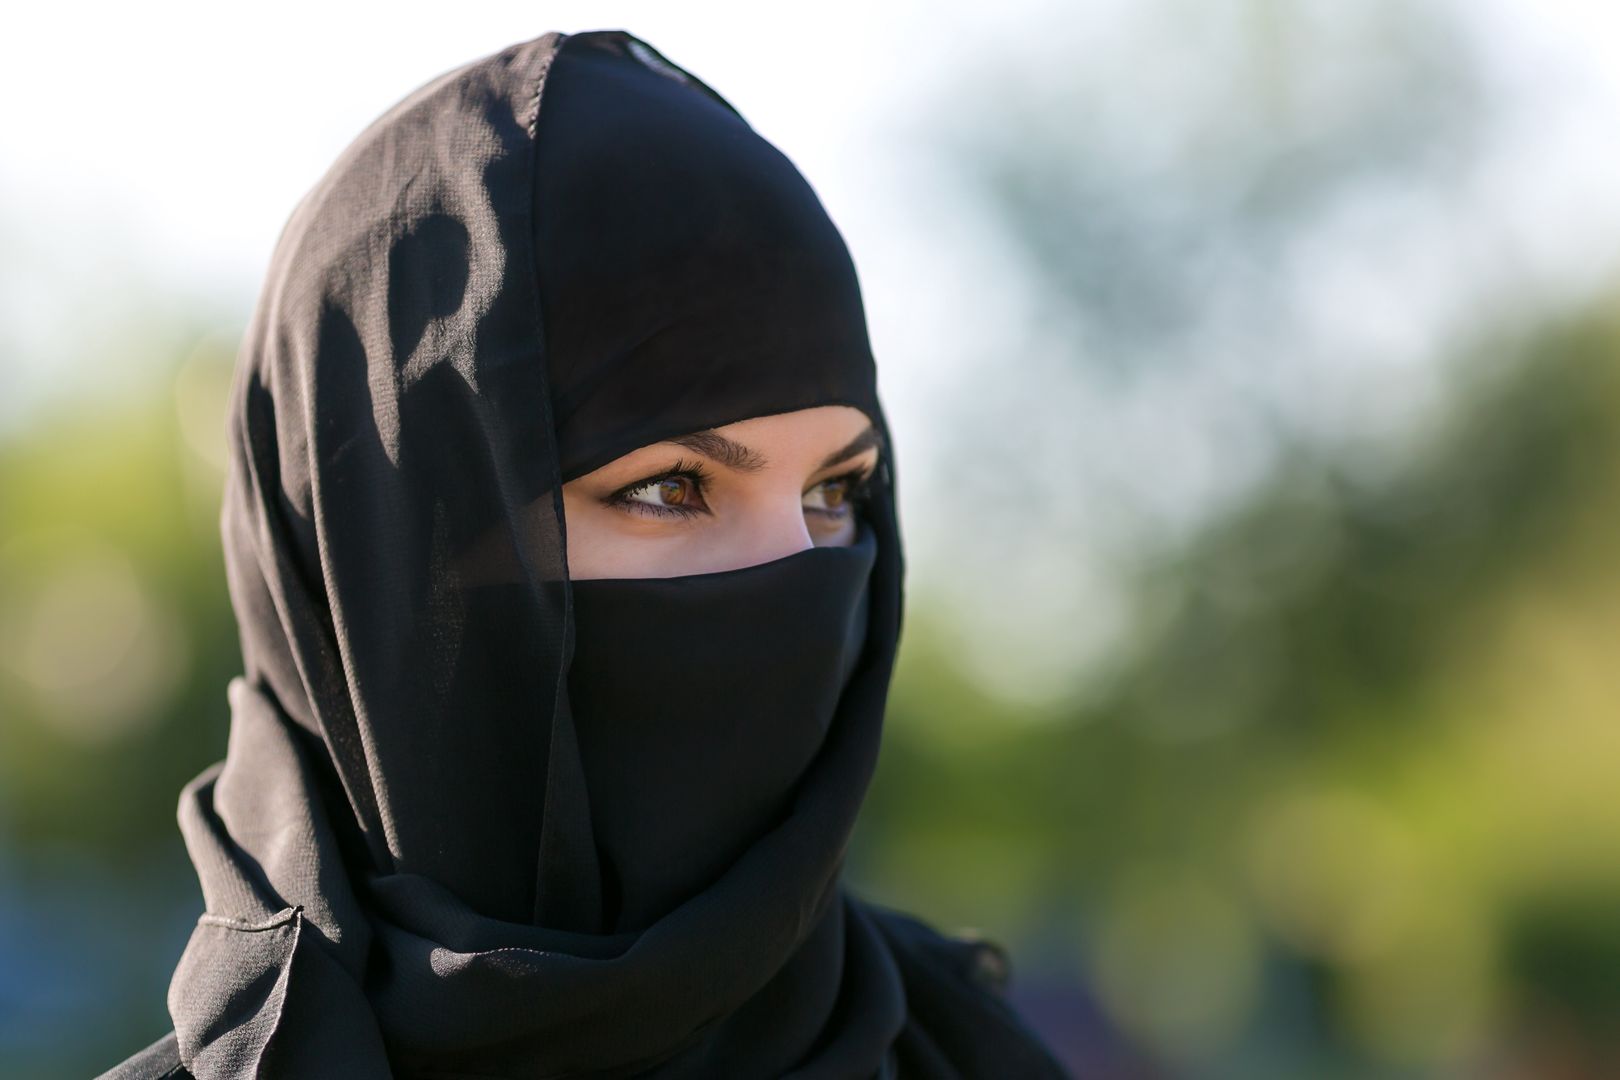 Rosja reaguje na zamachy. Kobiety z zakazem zakrywania twarzy